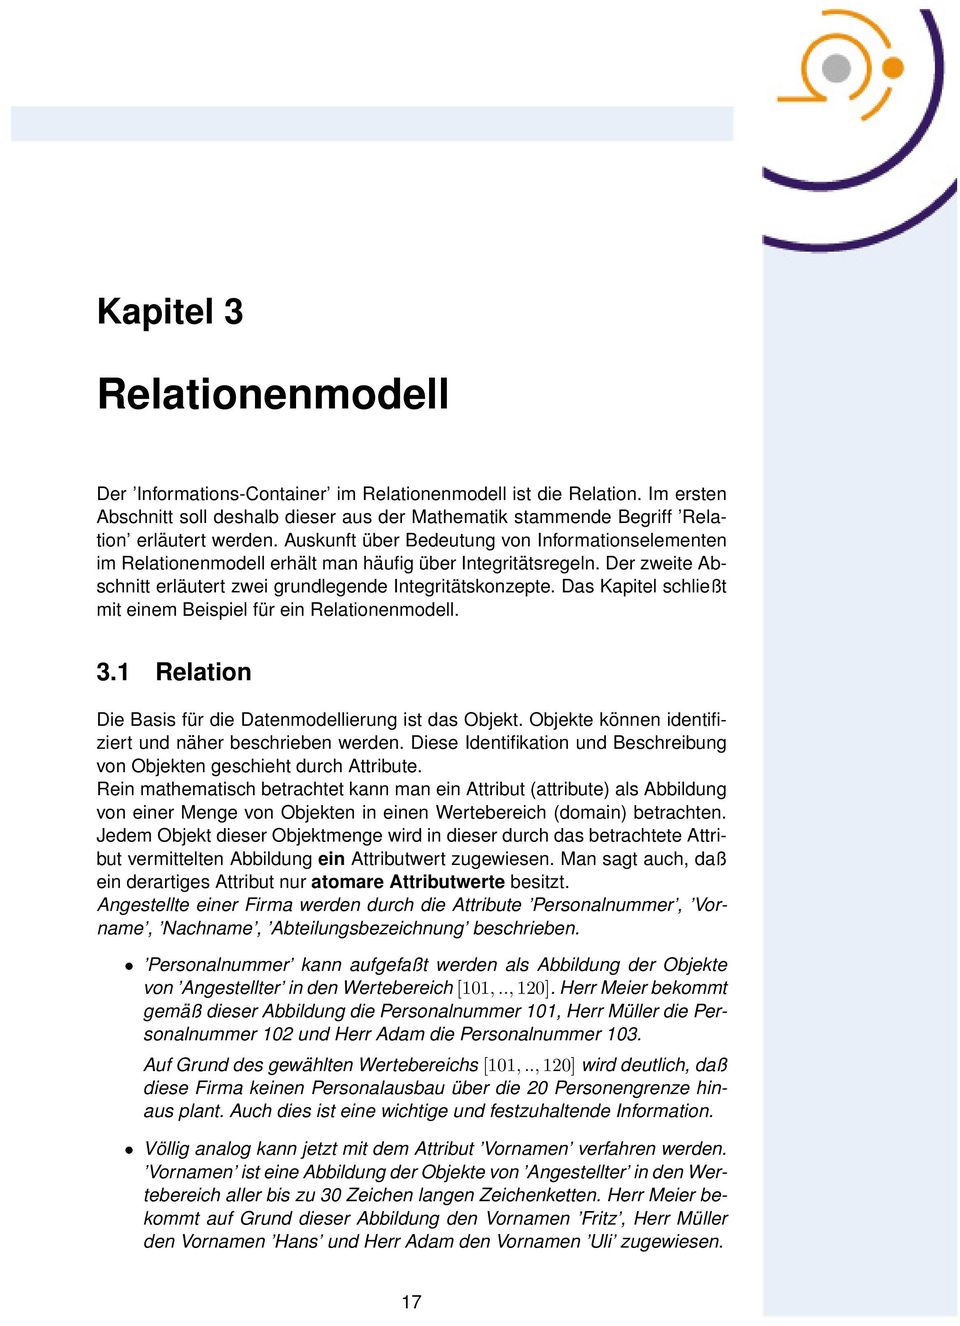 Das Kapitel schließt mit einem Beispiel für ein Relationenmodell. 3.1 Relation Die Basis für die Datenmodellierung ist das Objekt. Objekte können identifiziert und näher beschrieben werden.